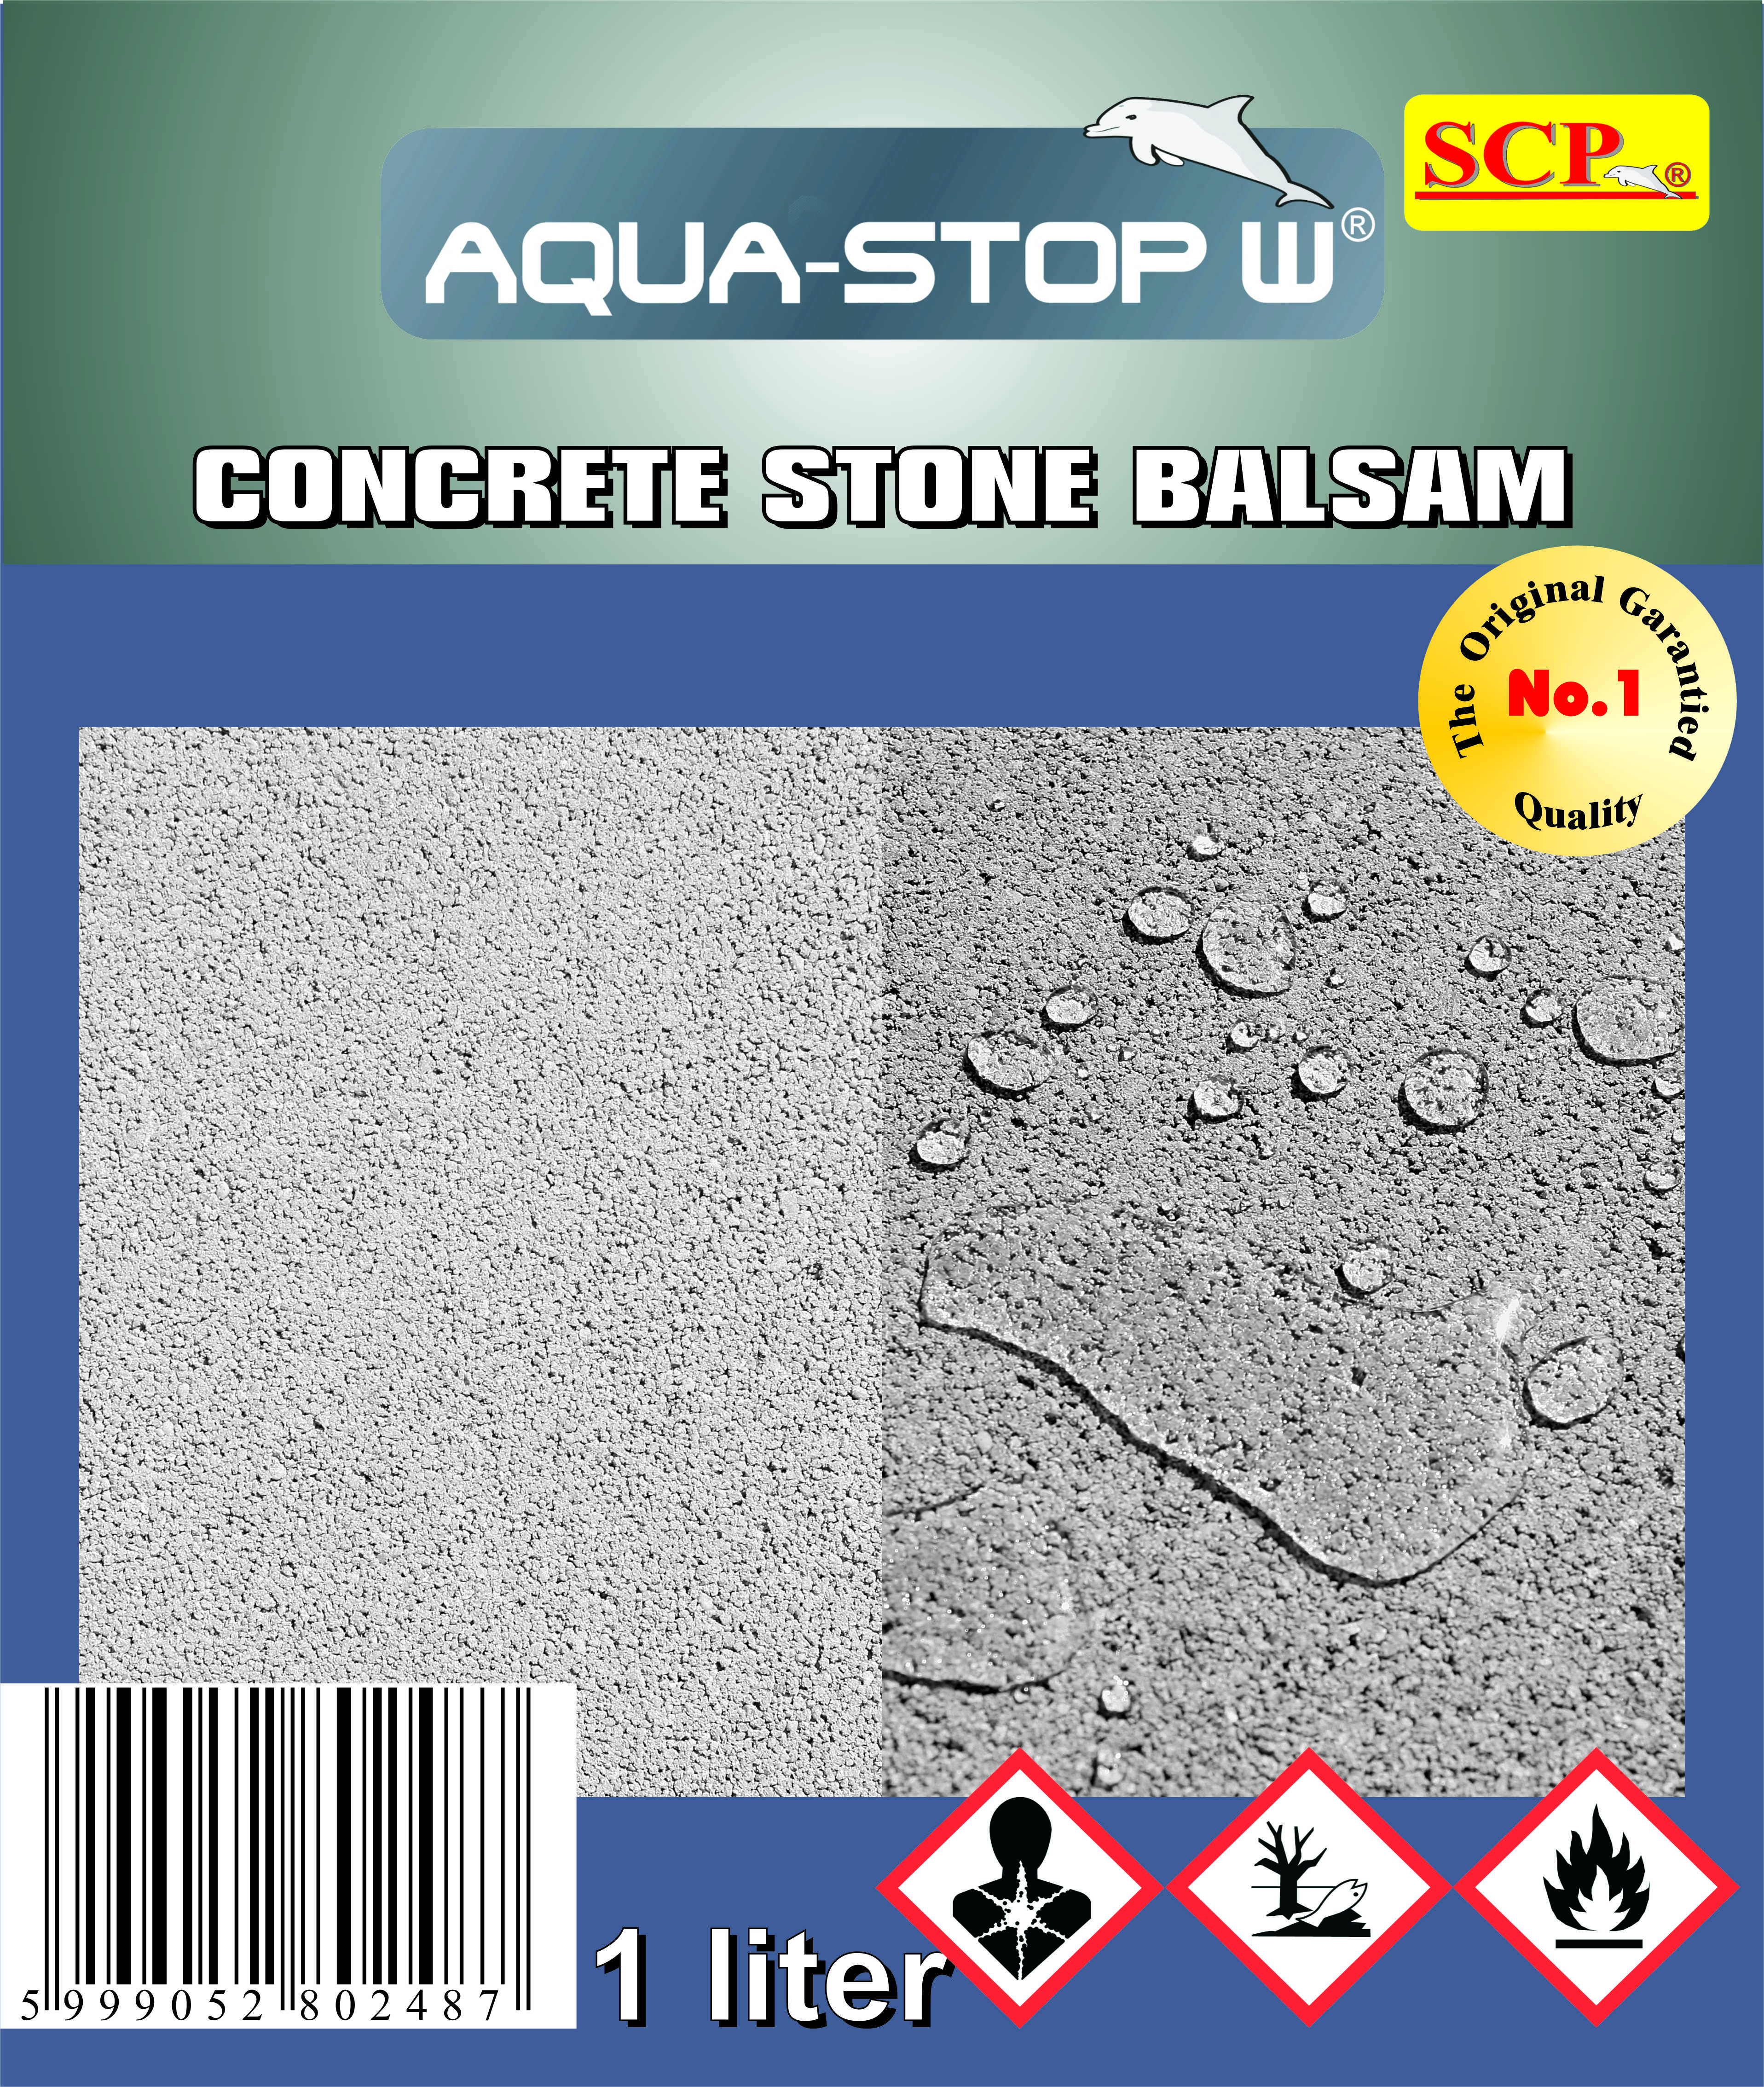 Concrete Stone Balsam